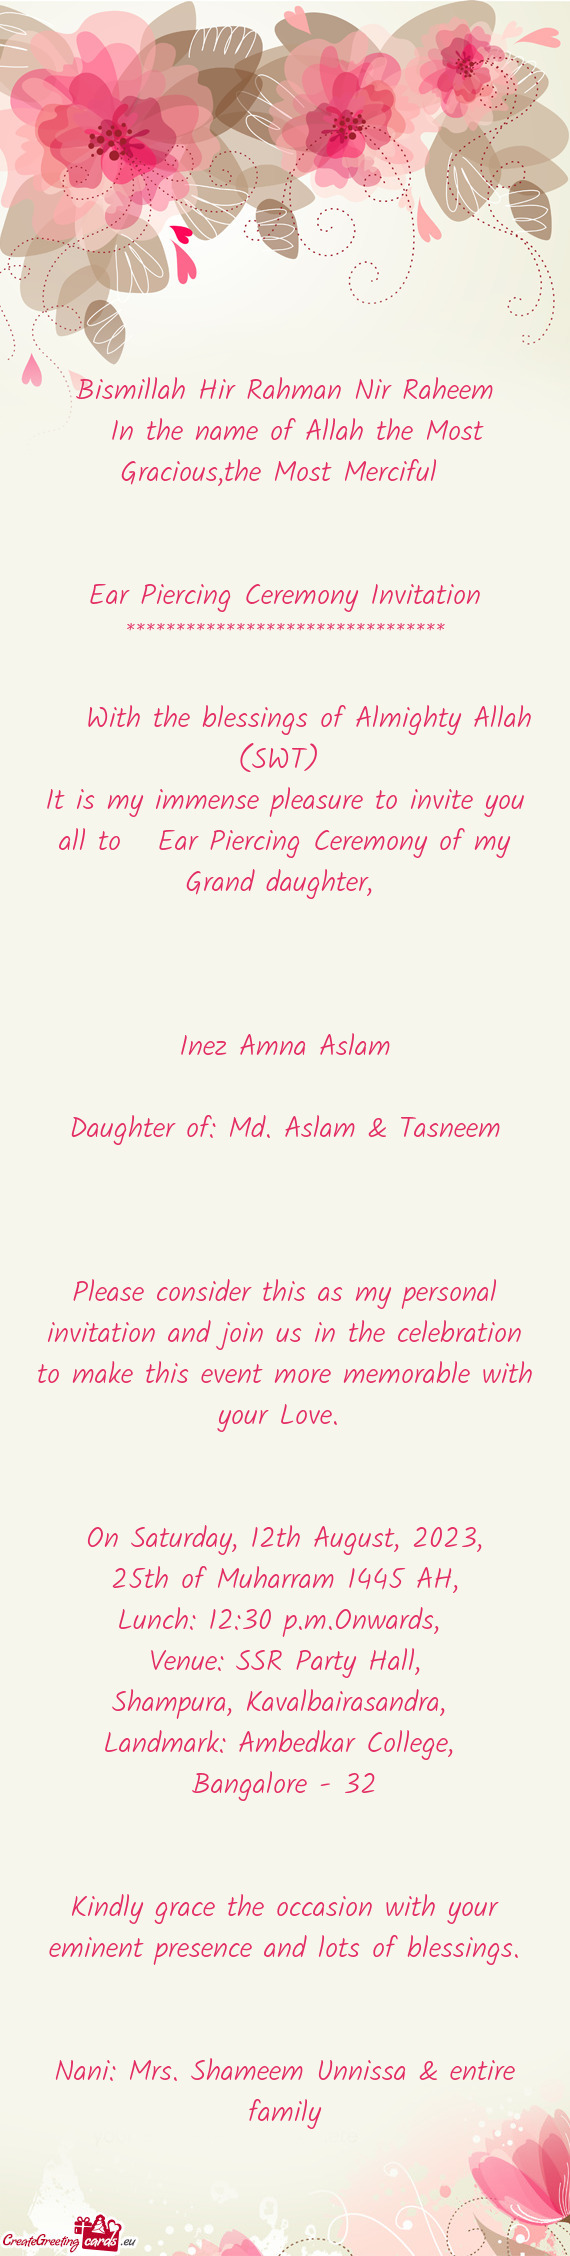 Daughter of: Md. Aslam & Tasneem